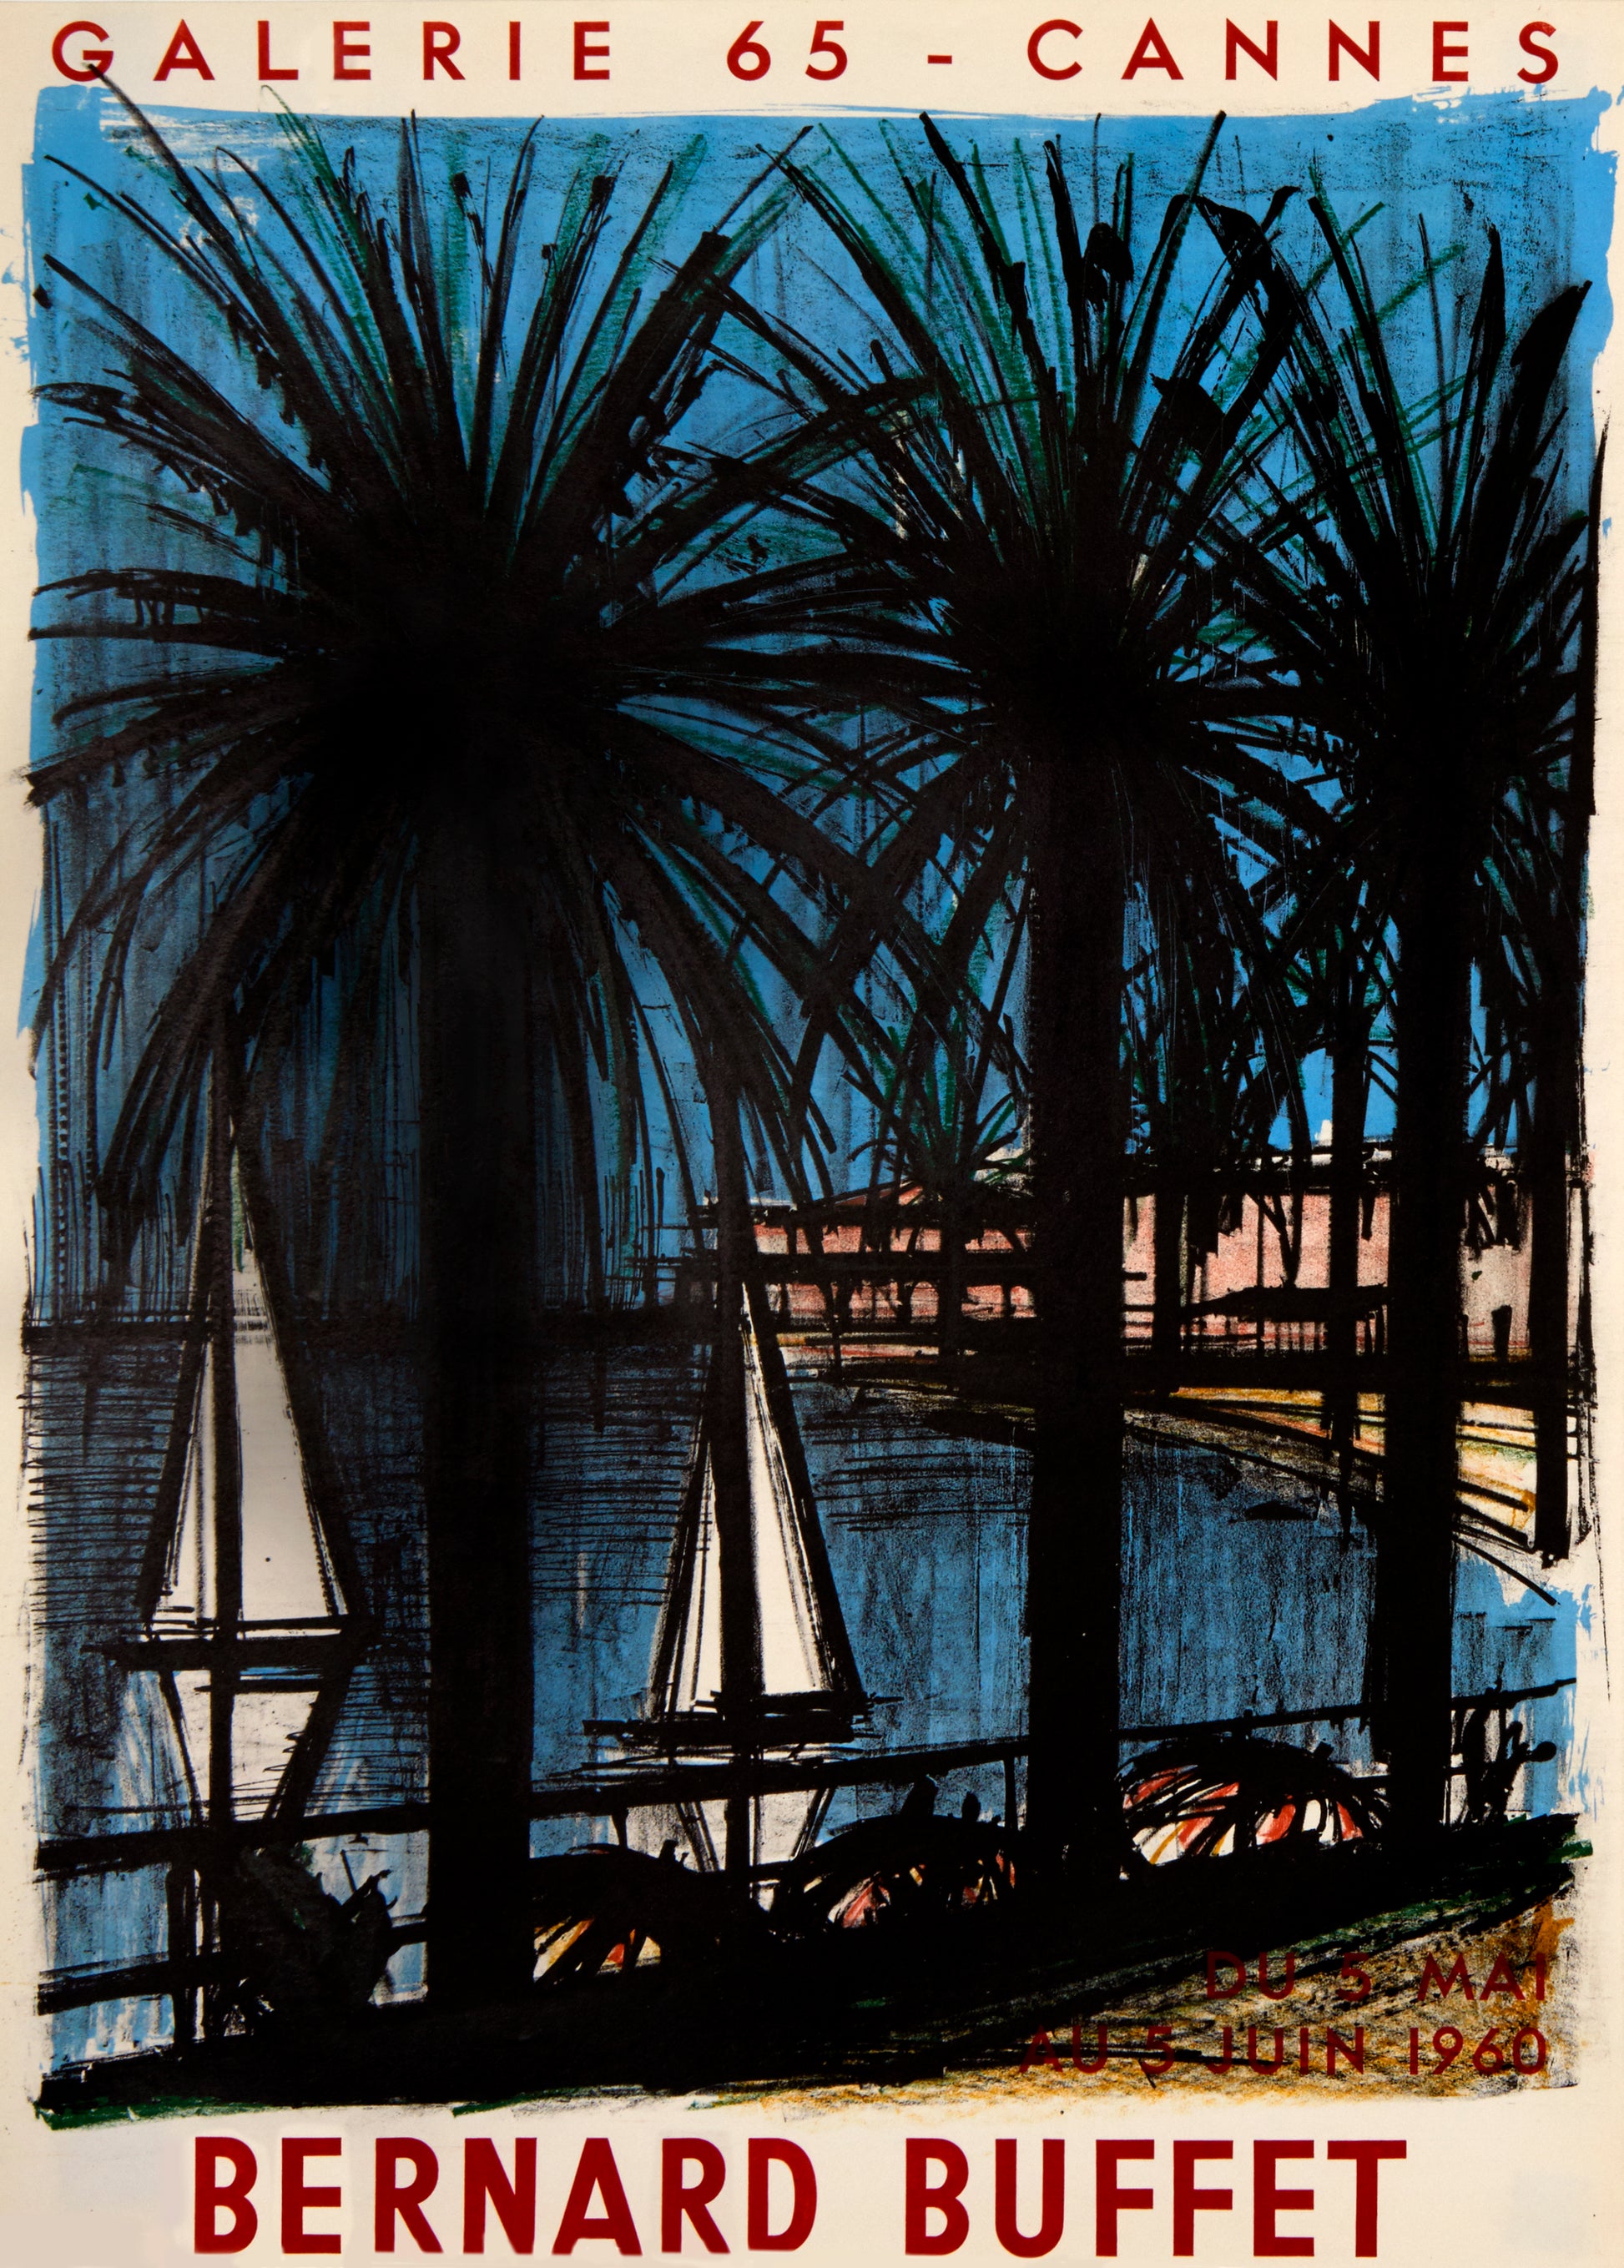 Galerie 65 - Cannes, by Bernard Buffet, 1960 - Mourlot Editions - Fine_Art - Poster - Lithograph - Wall Art - Vintage - Prints - Original